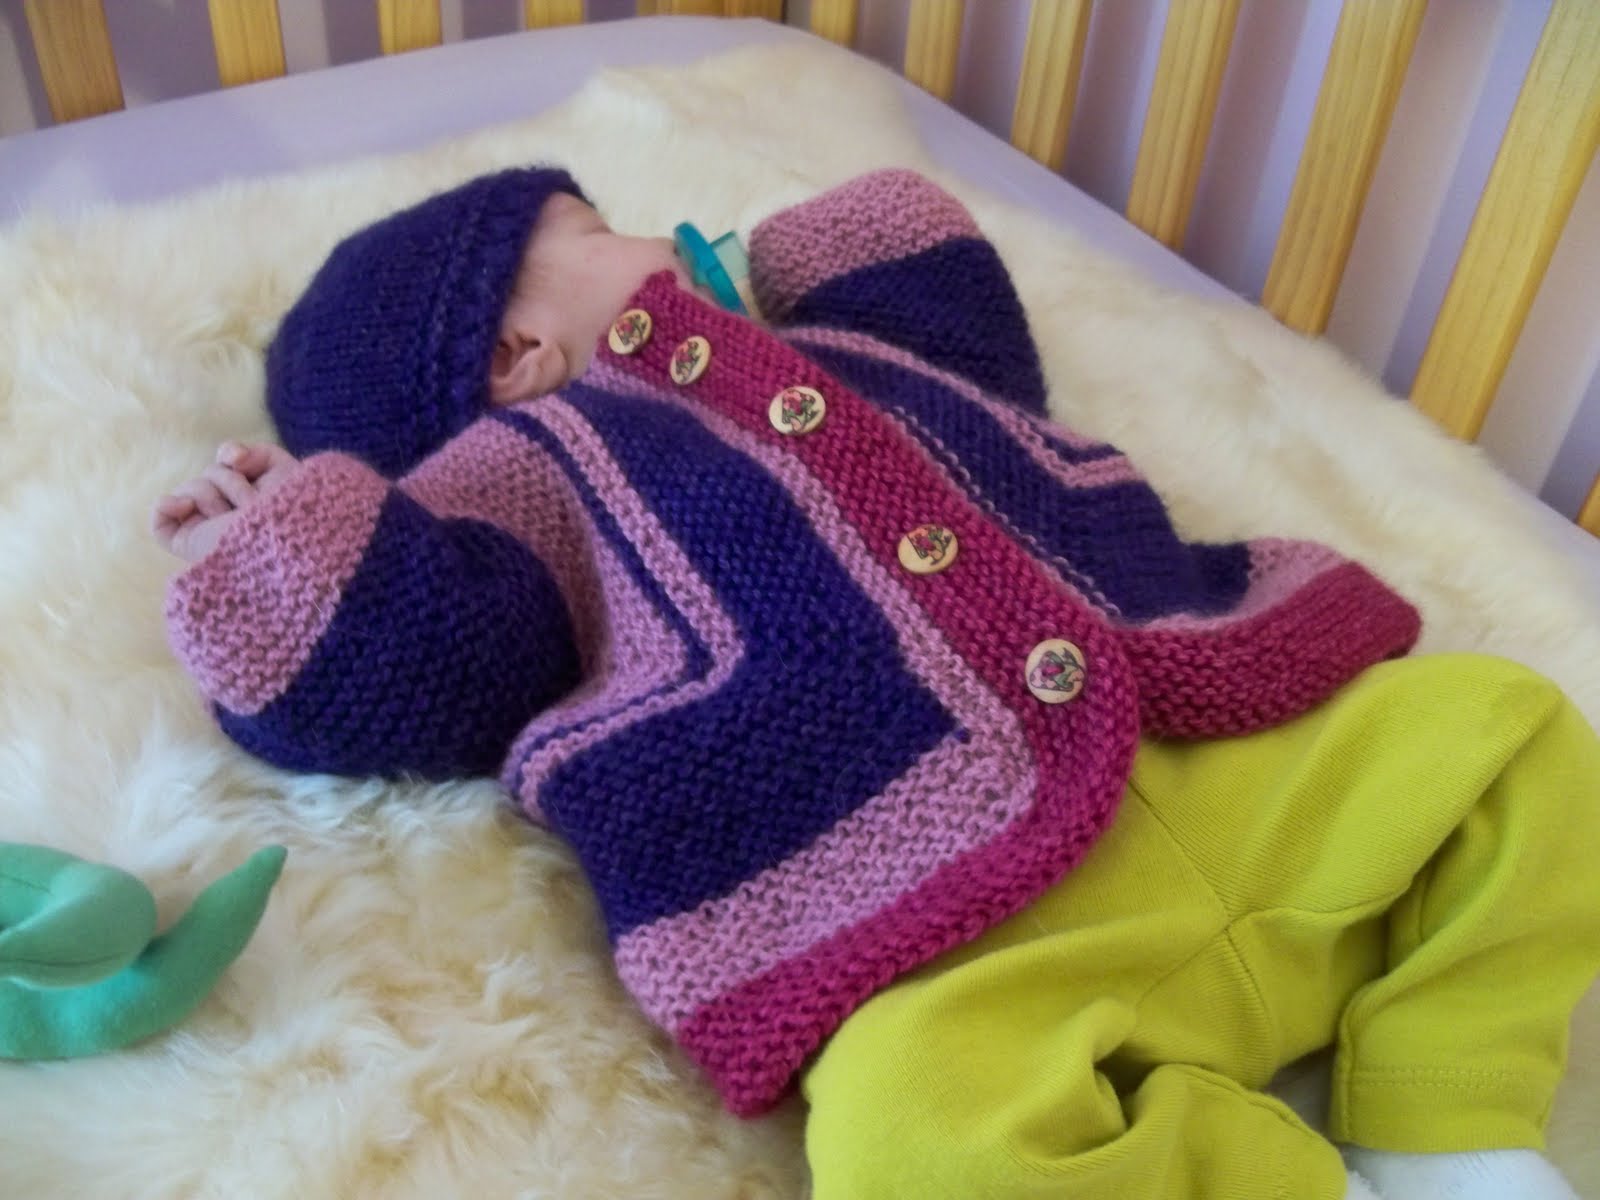 Free Mitred U Baby Jacket Pattern - Megan Mills&apos; Home page